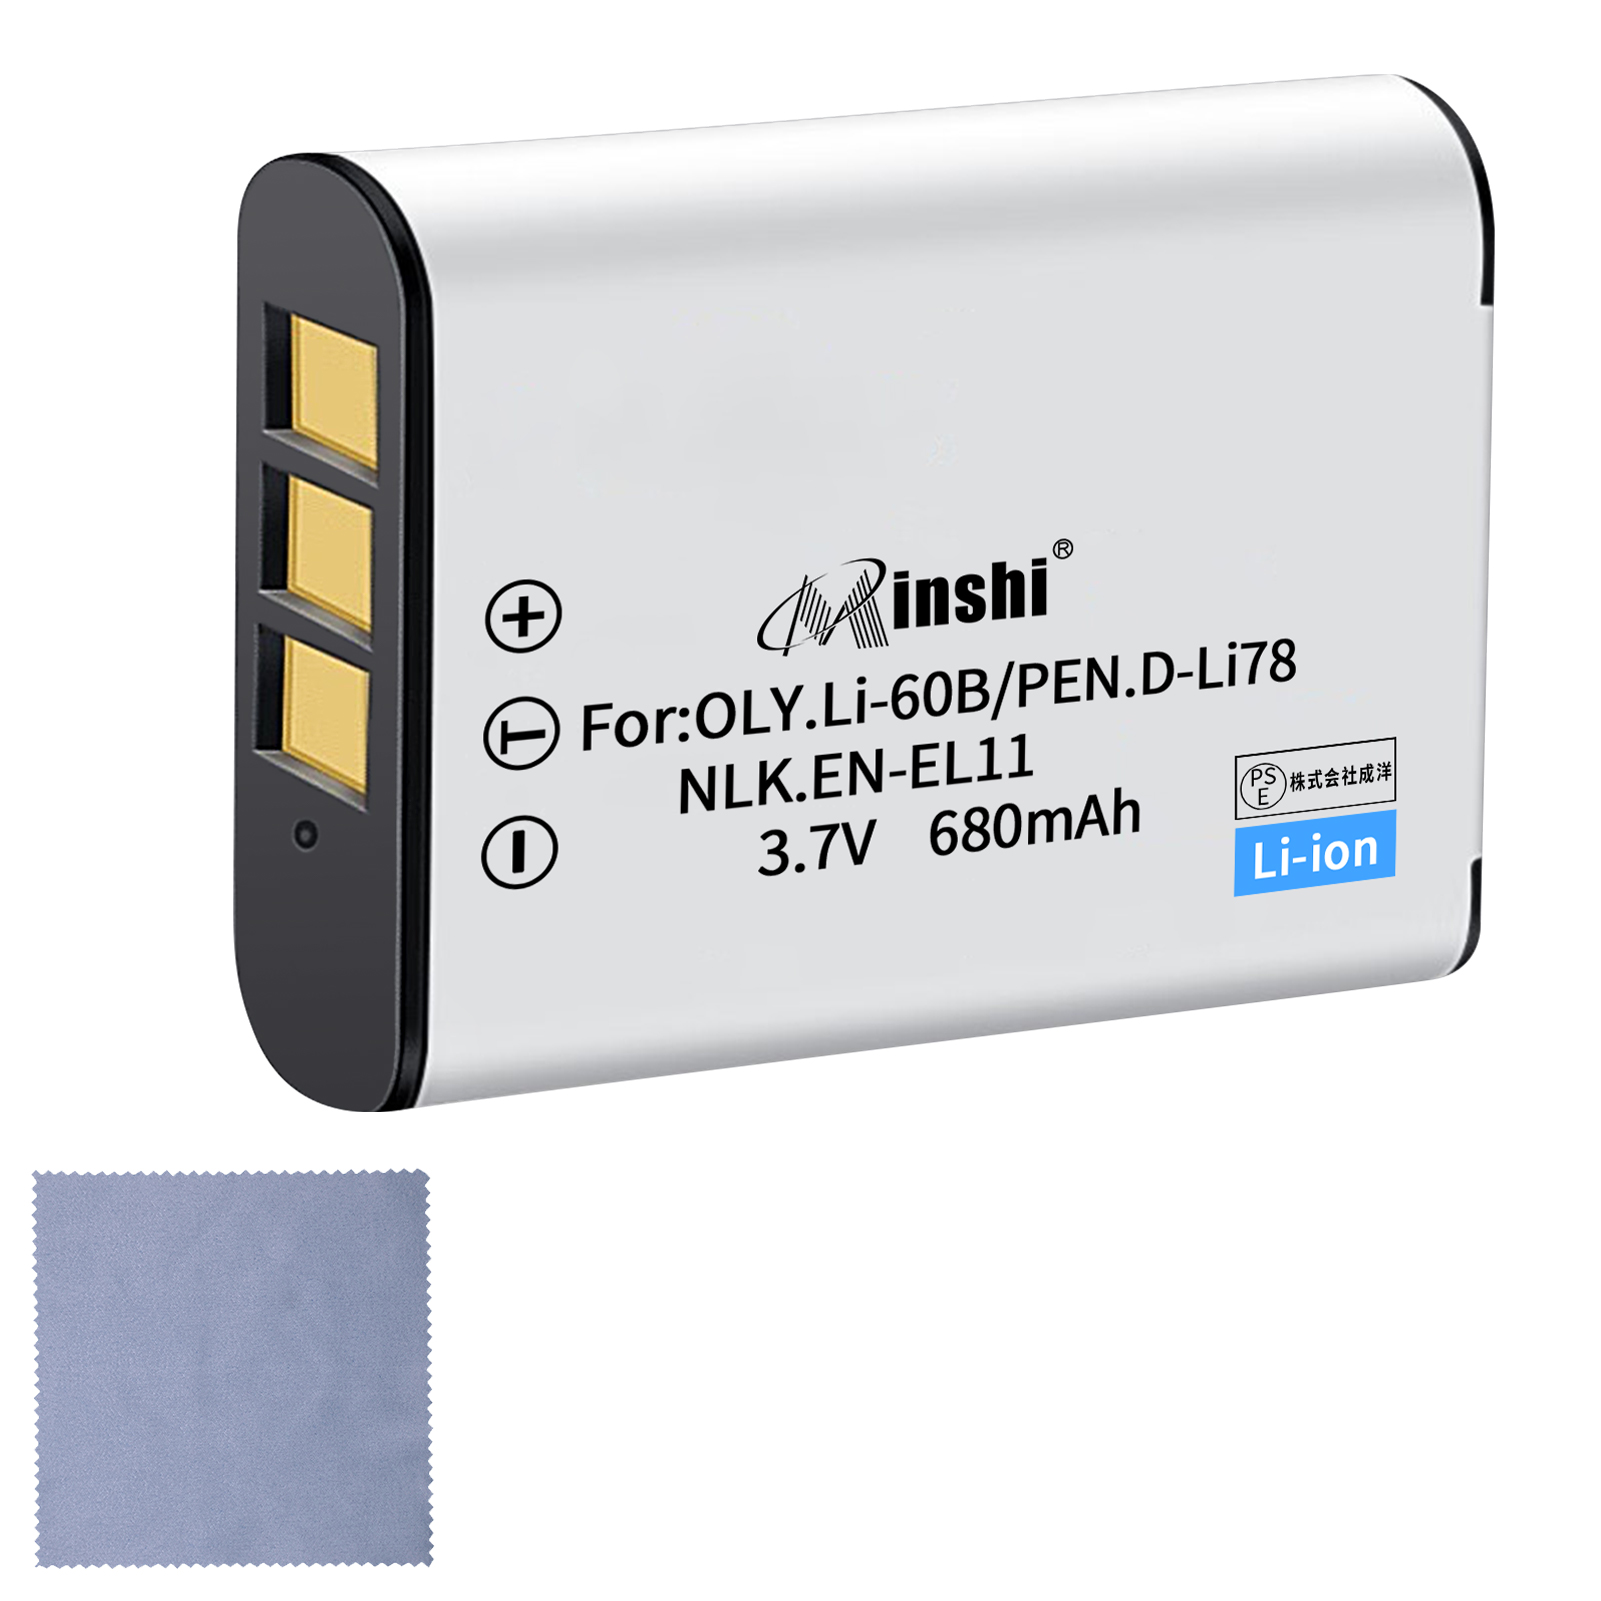 【クロス付き】minshi NIKON Xacti DMX-E10【680mAh 3.7V】PSE認定済 高品質交換用バッテリー オリジナル充電器との互換性がない